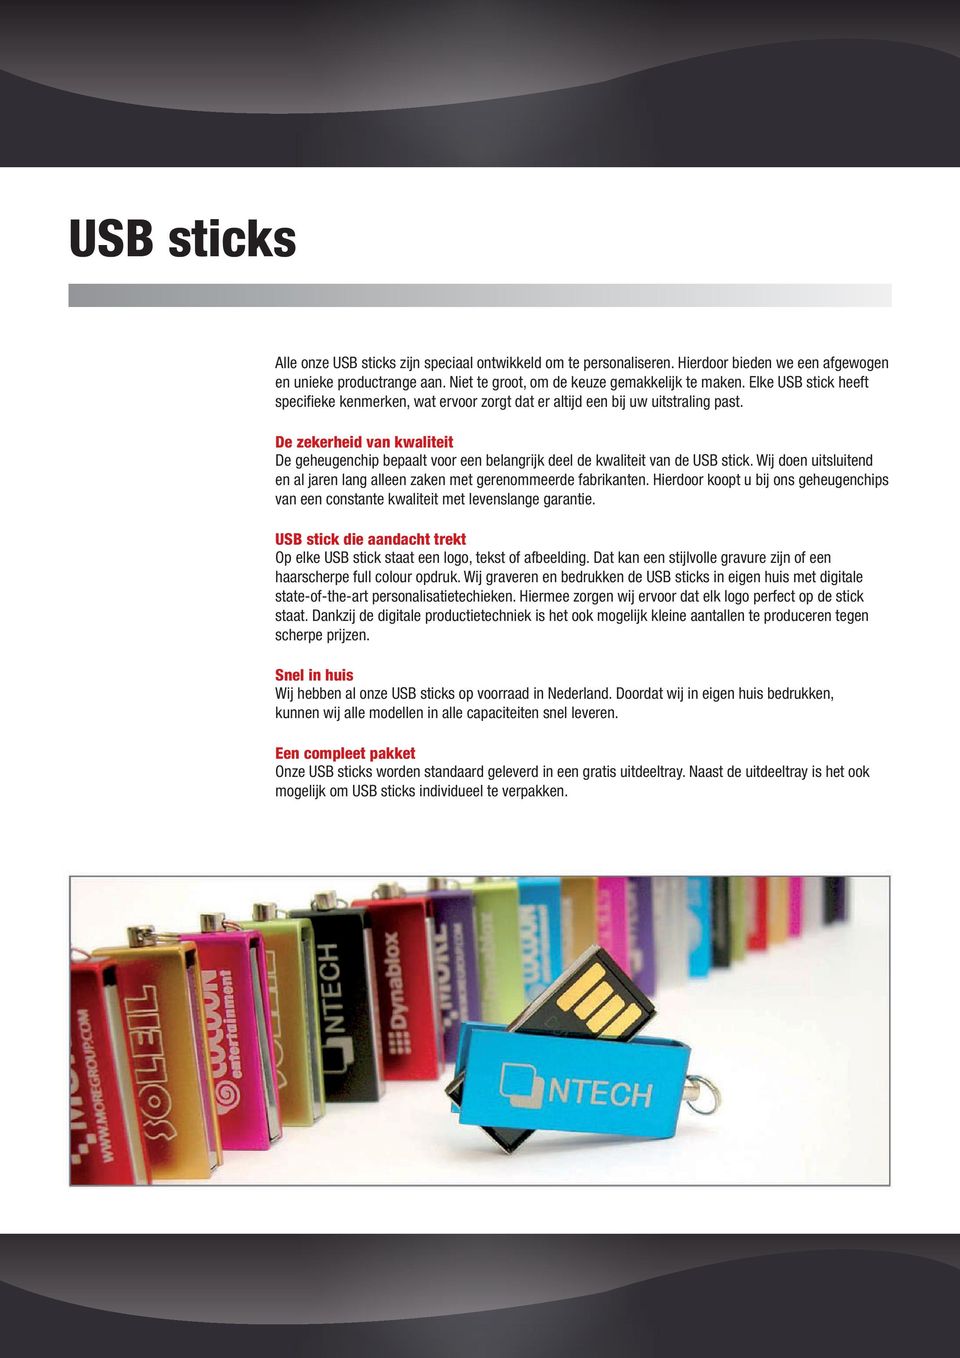 De zekerheid van kwaliteit De geheugenchip bepaalt voor een belangrijk deel de kwaliteit van de USB stick. Wij doen uitsluitend en al jaren lang alleen zaken met gerenommeerde fabrikanten.